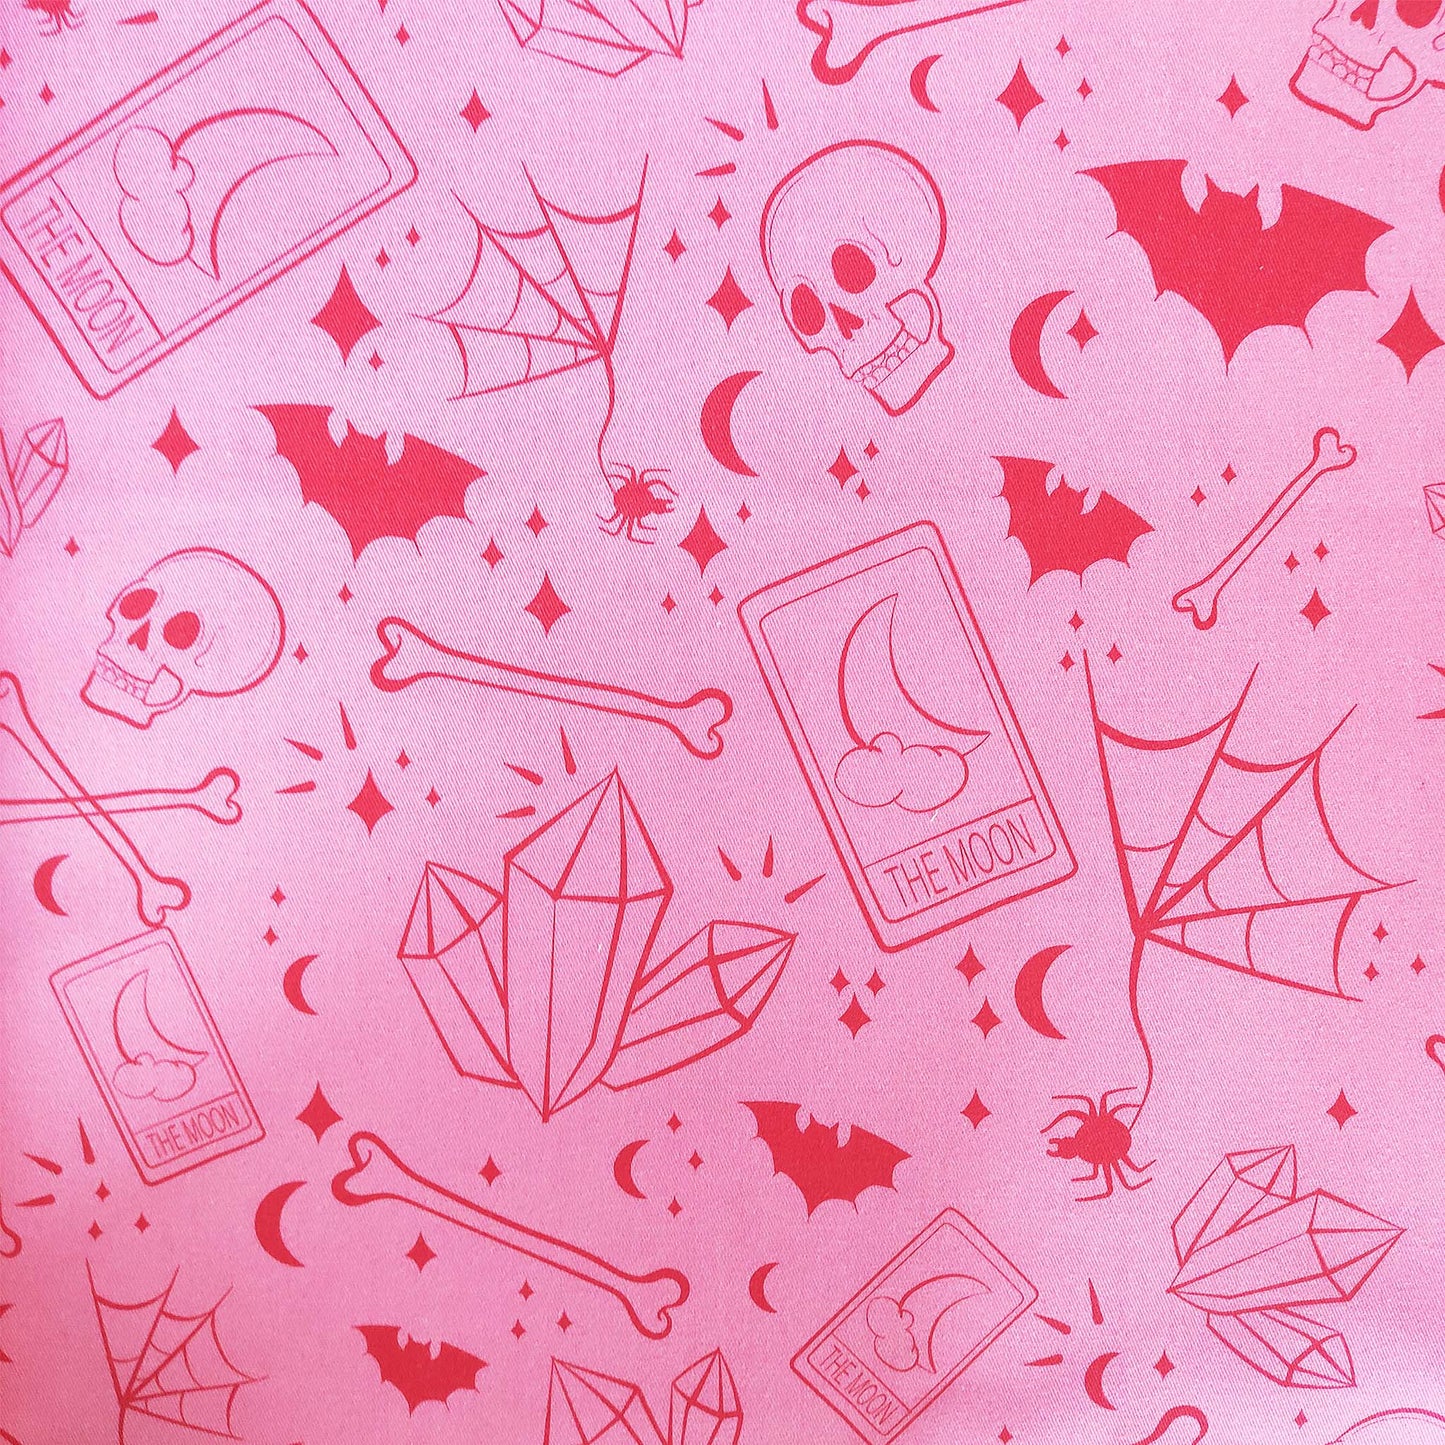 Eine tolle Shopper-Tasche, mit Wicca- und spirituellen Elementen. Das Design umfasst Totenköpfe, Knochen, Fledermäuse, Edelsteine und Tarotkarten auf einem rosa Hintergrund.